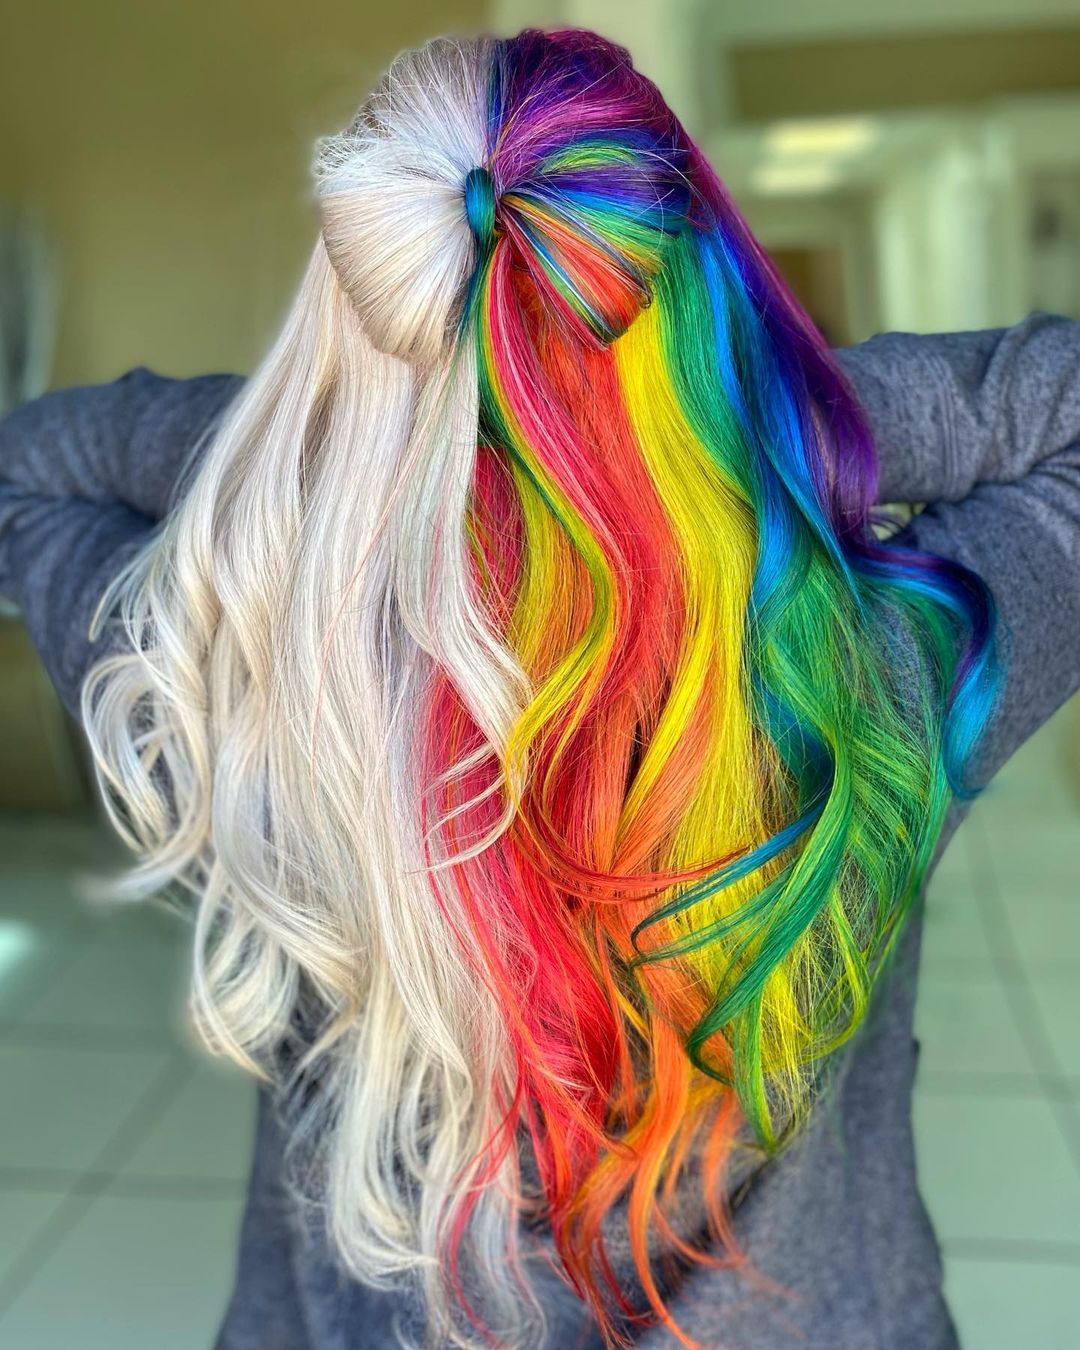 arco de cabelo com cores meio louras meio arco-íris